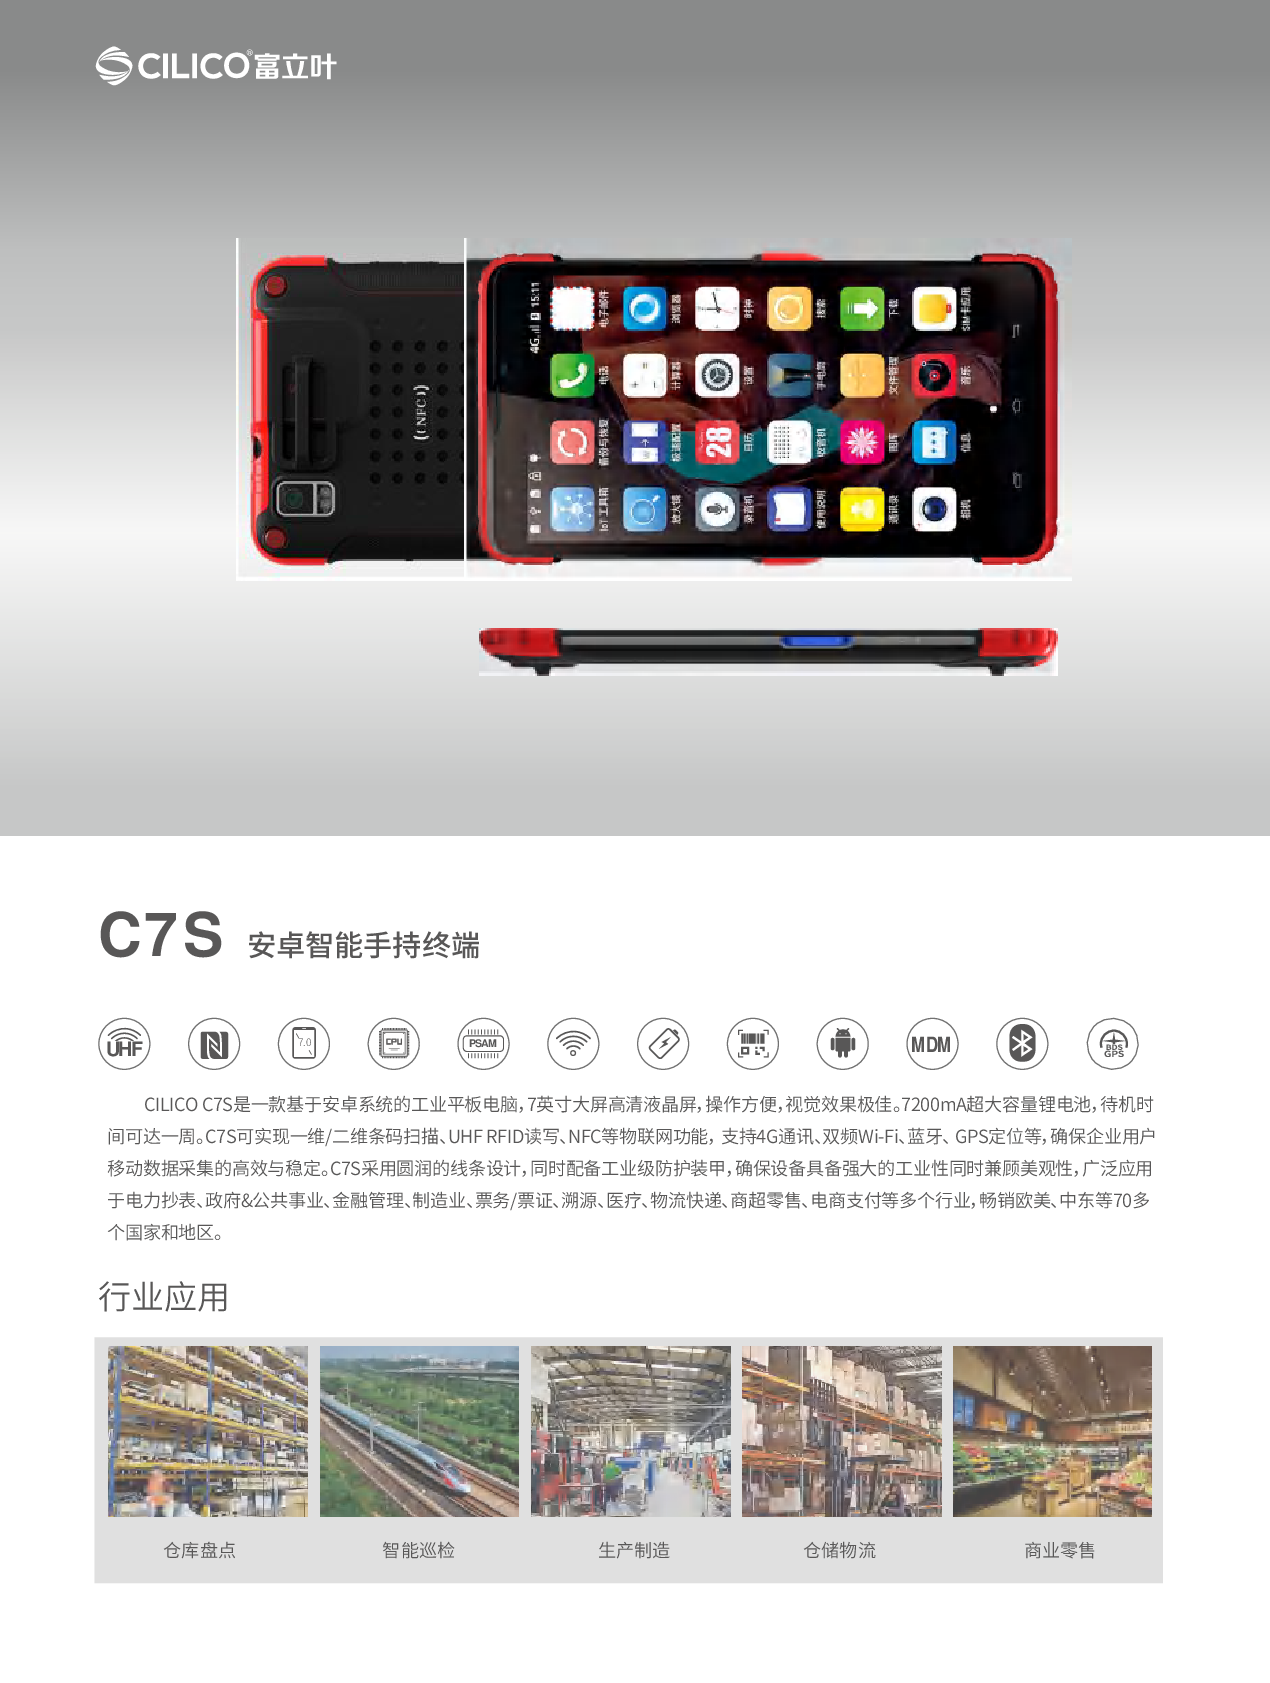   富立叶C7X工业平板一二维条码扫描UHFRFID读写NFC双频wifi蓝牙GPS图片